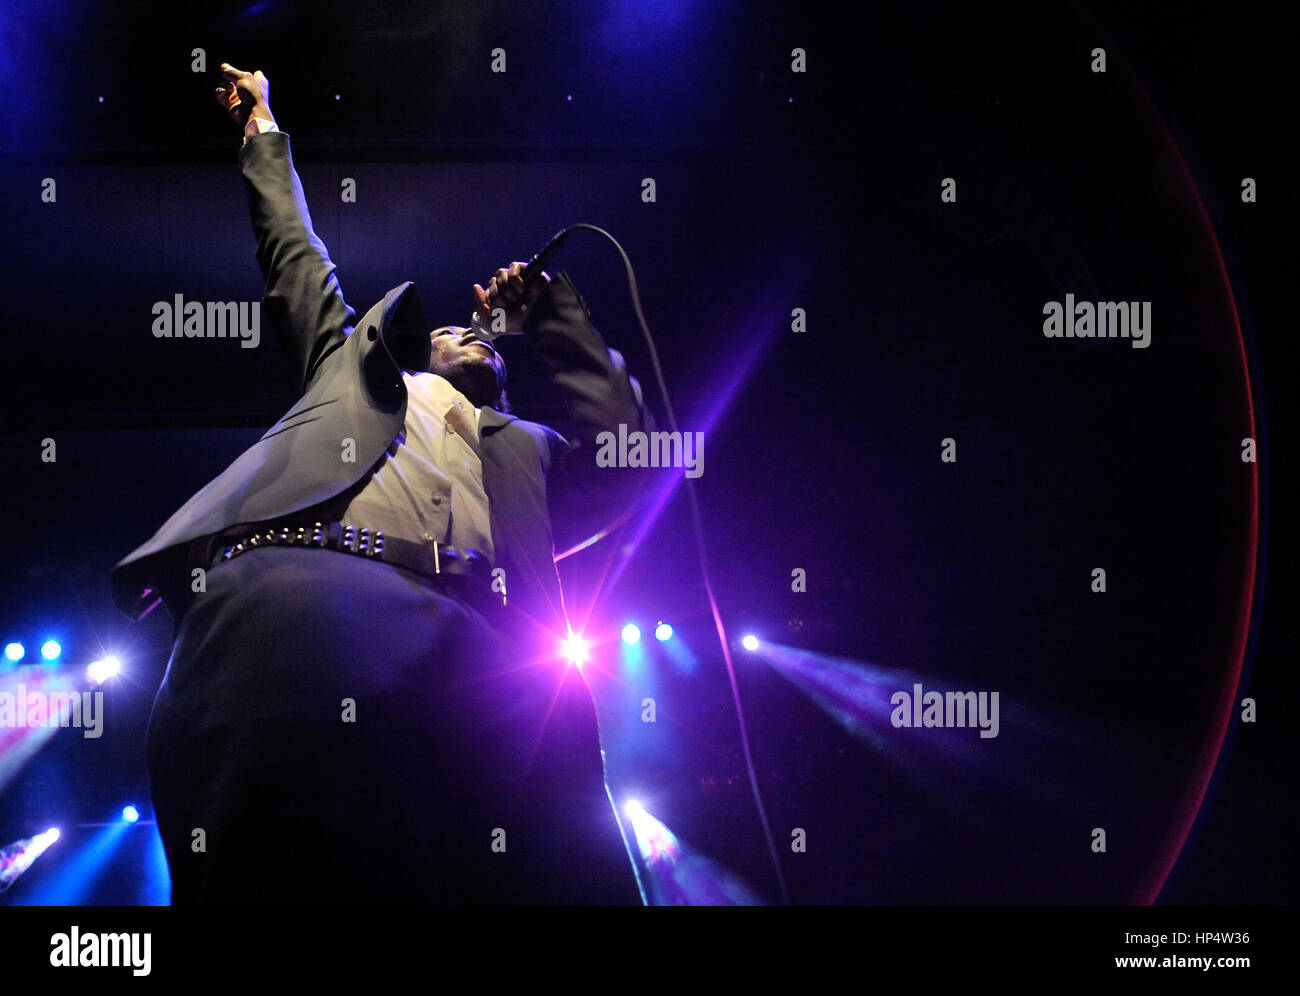 11.02.2011 DUDELANGE, Luxemburg: belgische Sängerin LubumbashiBelgian Rapperperfoms bei seinem Konzert in Dudelange, präsentiert seine Kinshasa Succursale ein Stockfoto